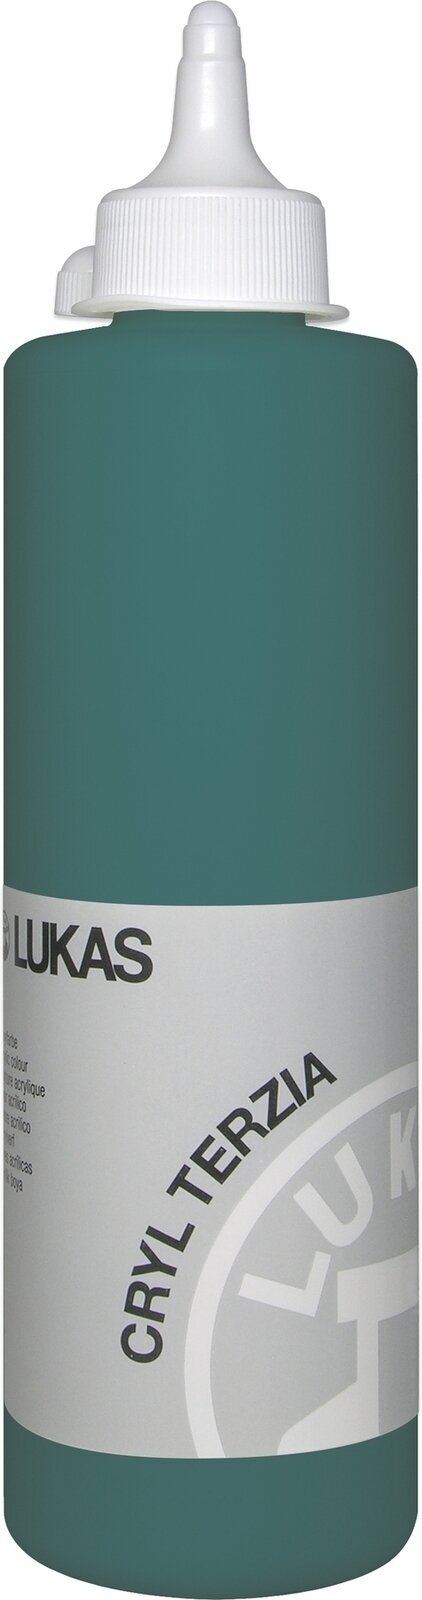 Tinta acrílica Lukas Cryl Terzia Acrylic Paint Plastic Bottle Tinta acrílica Viridian Hue 500 ml 1 un.